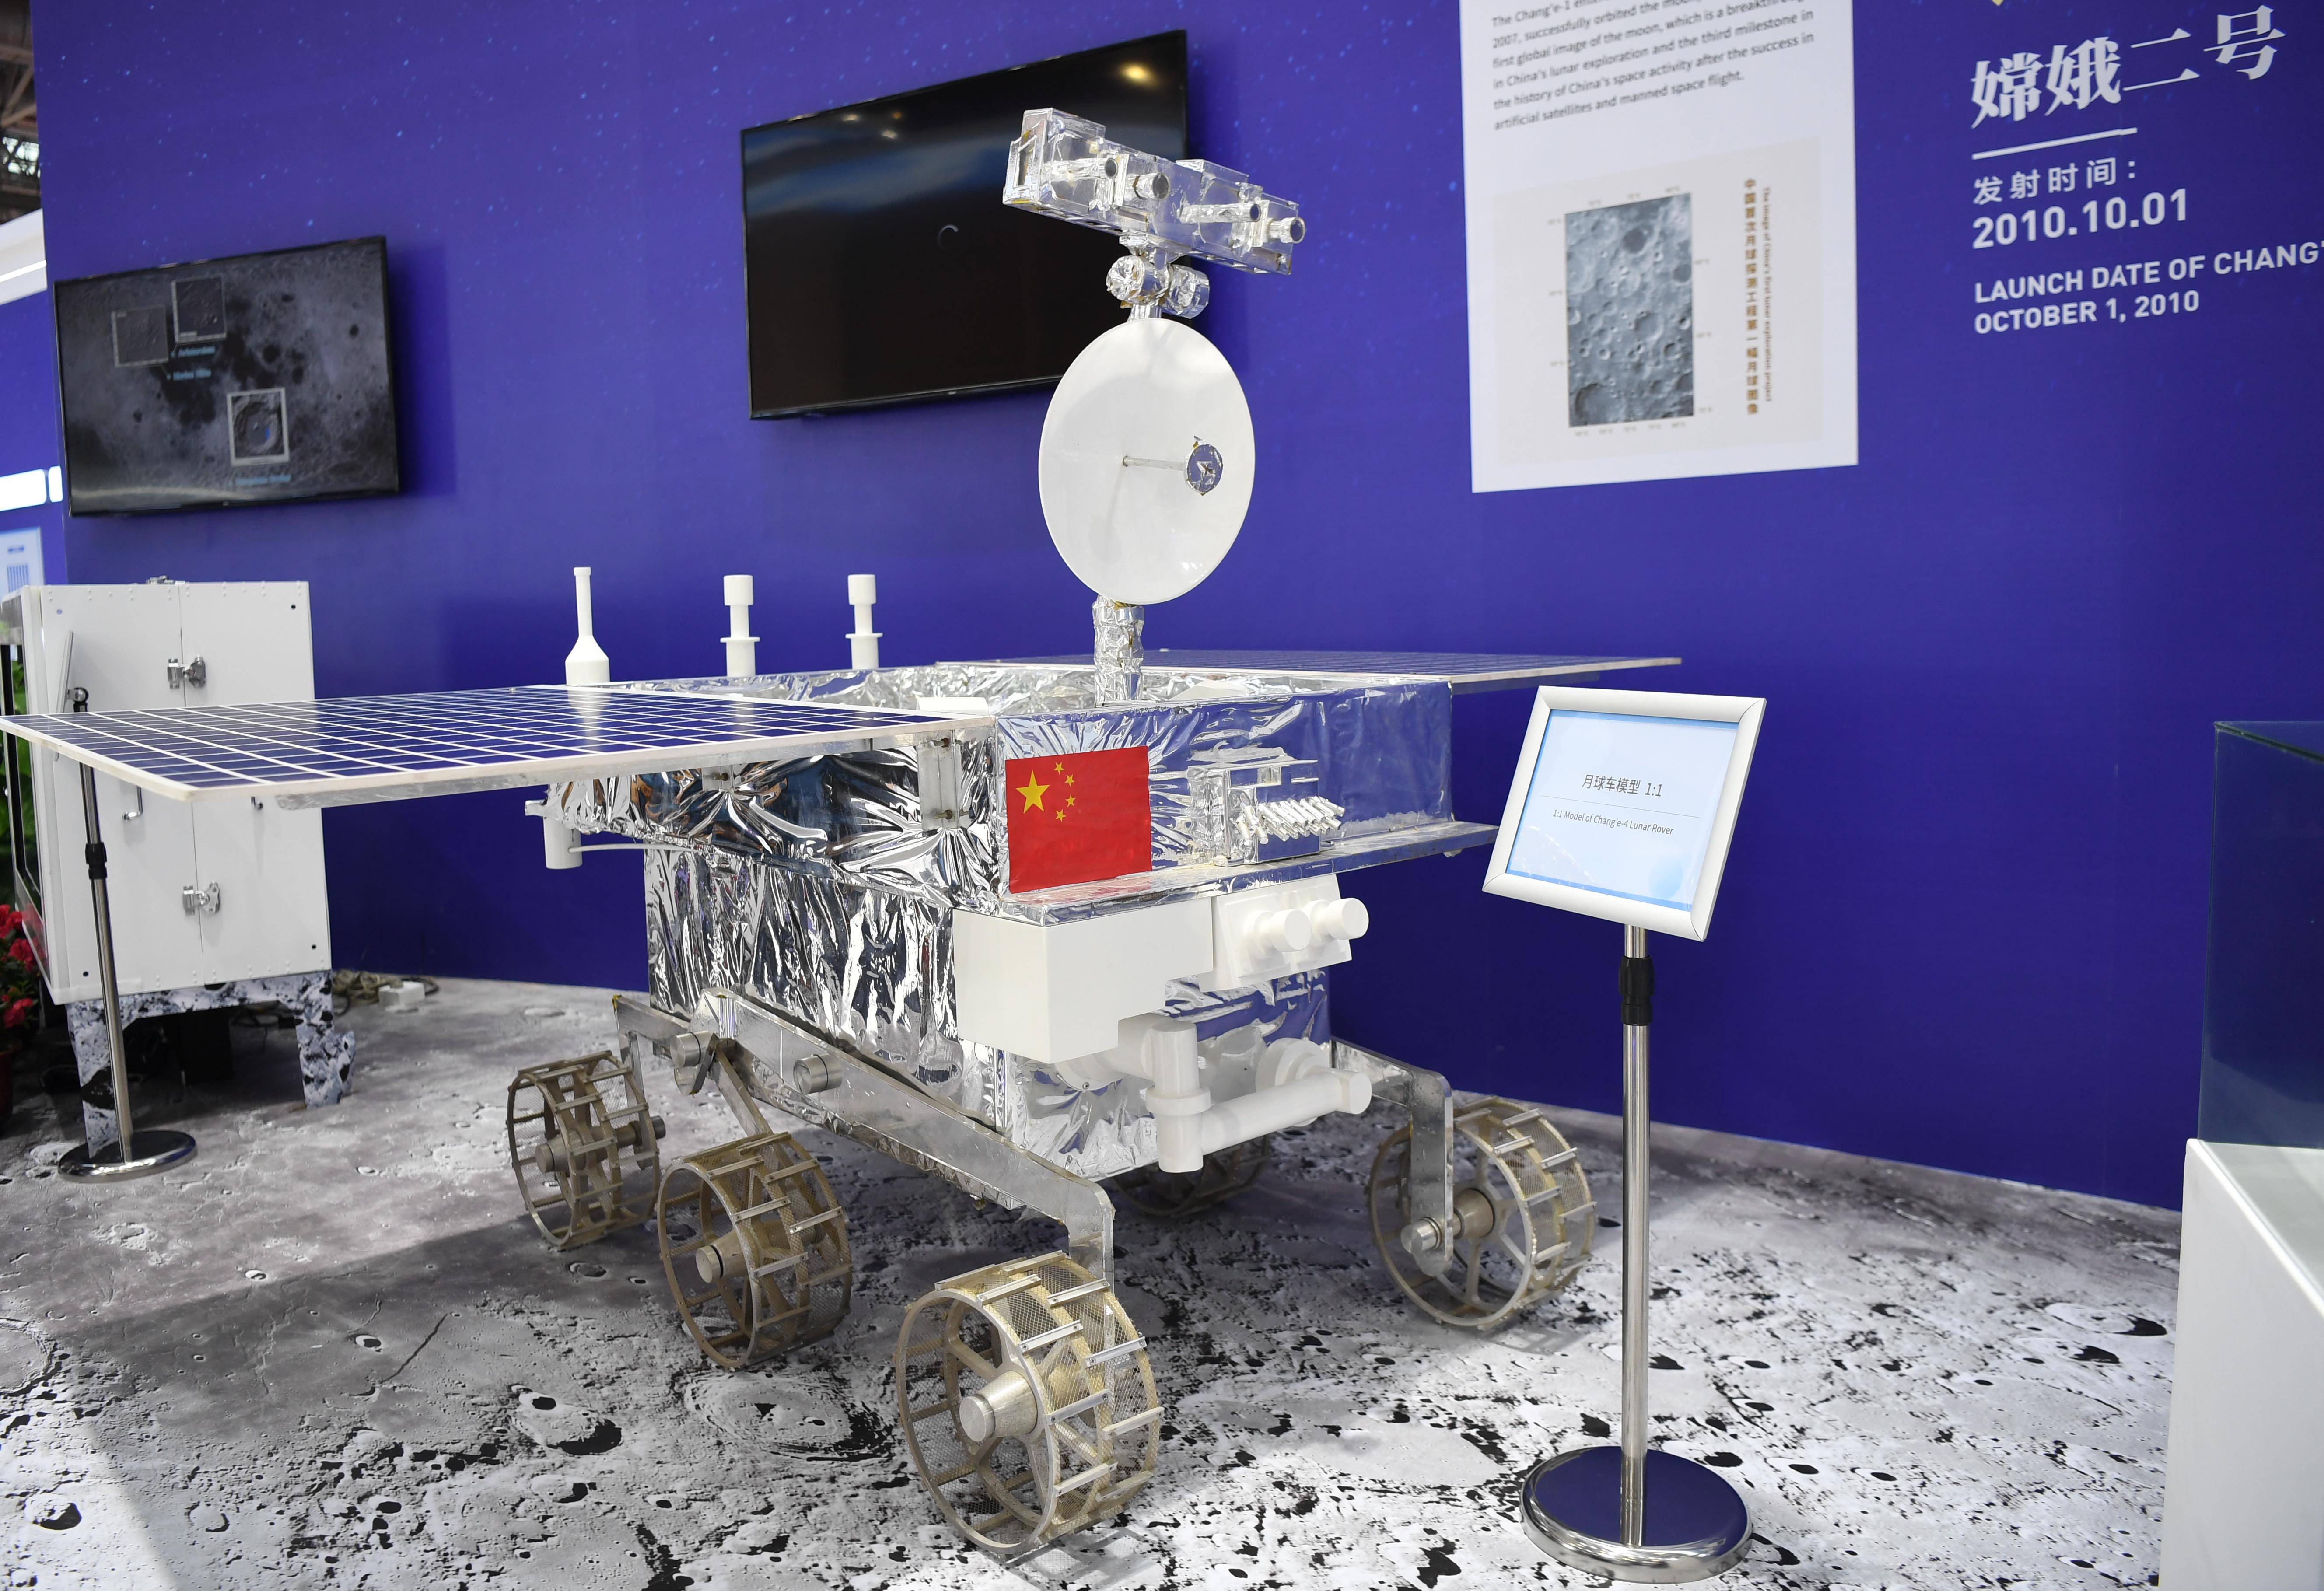 这是航展上展示的月球车模型(9月29日摄 新华社记者 邓华 摄